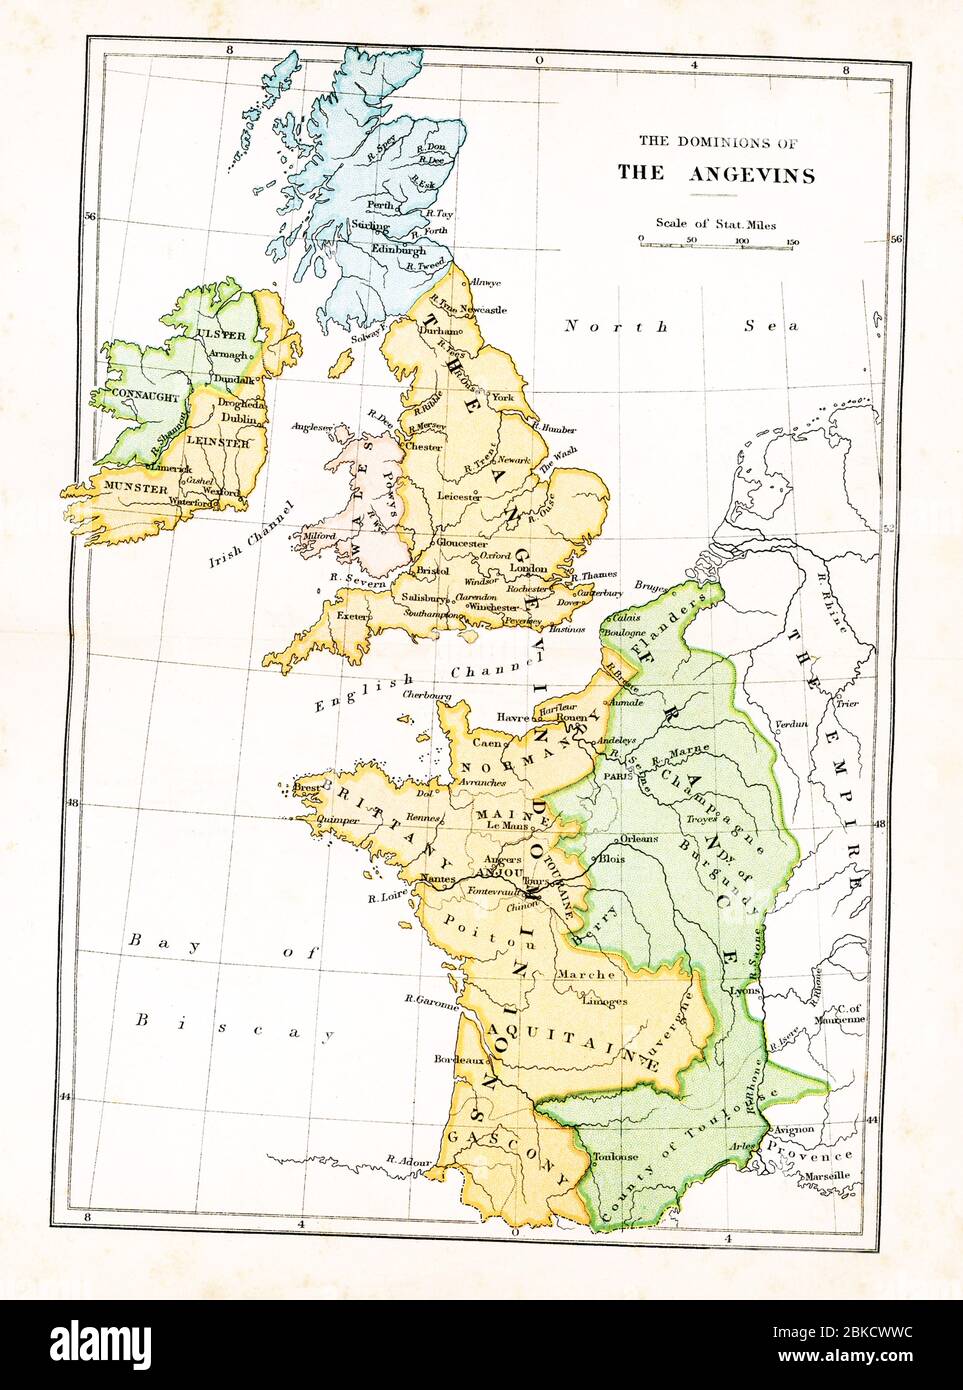 Diese Karte zeigt die Herrschaften der Angevins in Großbritannien. Die Angevins waren ein königliches Haus französischen Ursprungs, das England im 12. Und frühen 13. Jahrhundert regierte; seine Monarchen waren Heinrich II., Richard I. und John. Stockfoto